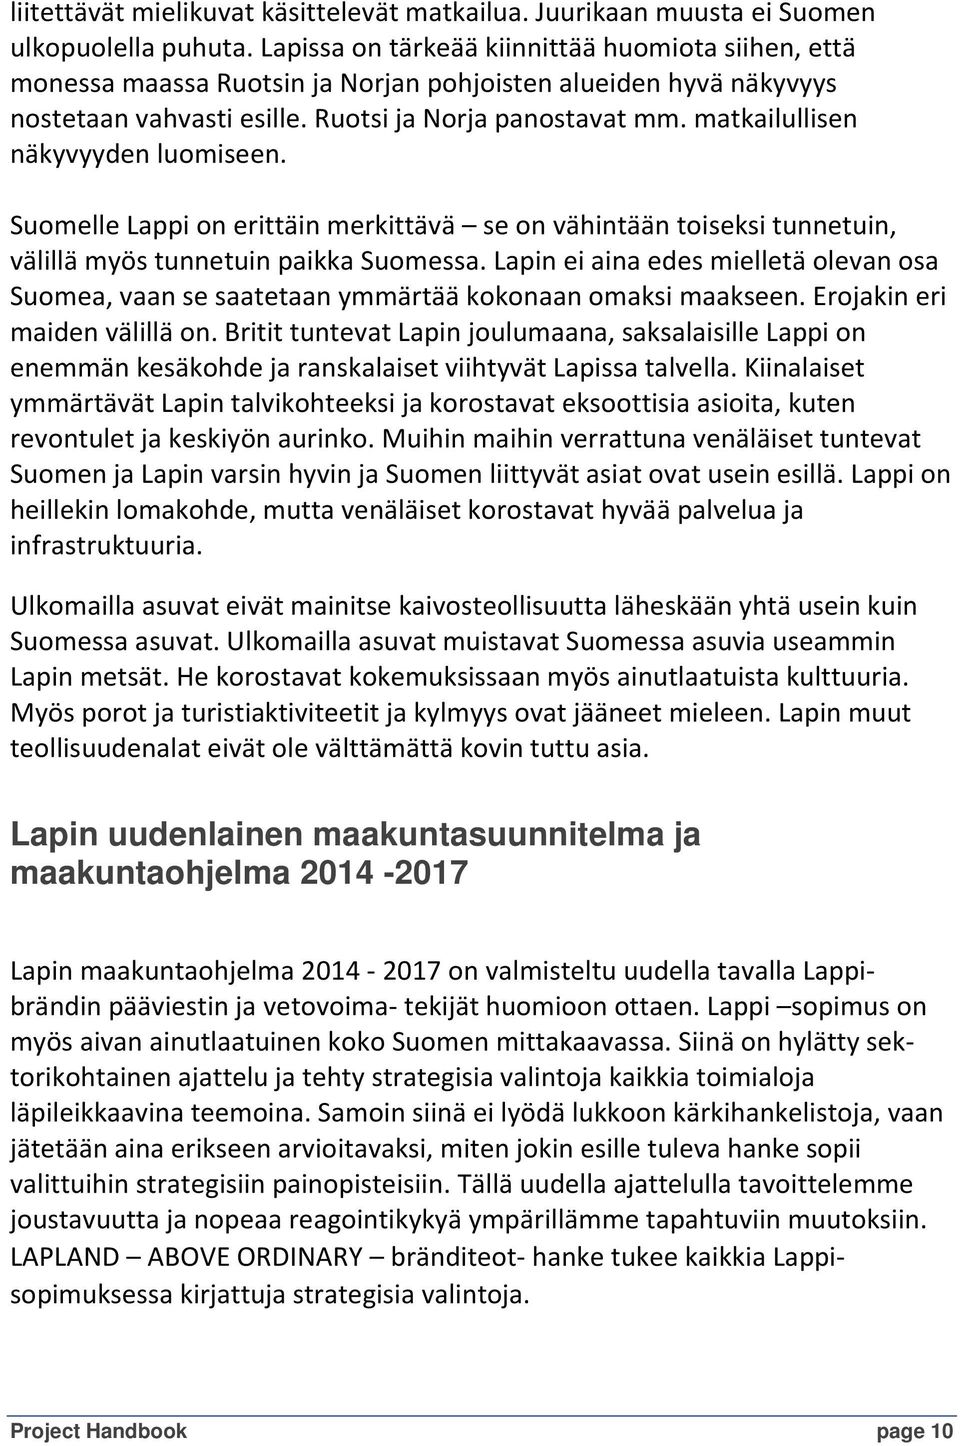 matkailullisen näkyvyyden luomiseen. Suomelle Lappi on erittäin merkittävä se on vähintään toiseksi tunnetuin, välillä myös tunnetuin paikka Suomessa.